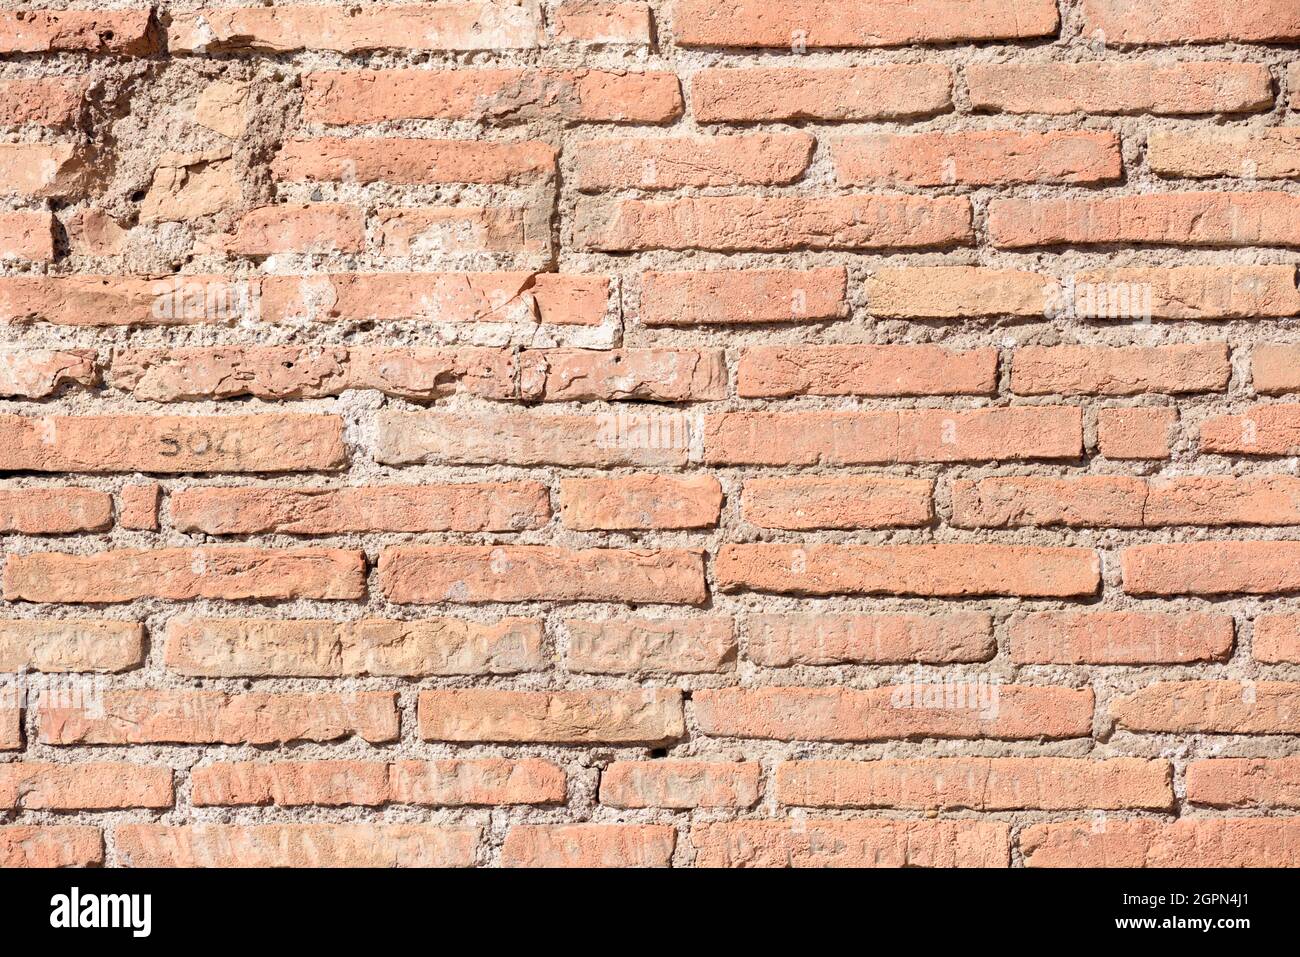 italy, rome, roman wall, red bricks close up Stock Photo